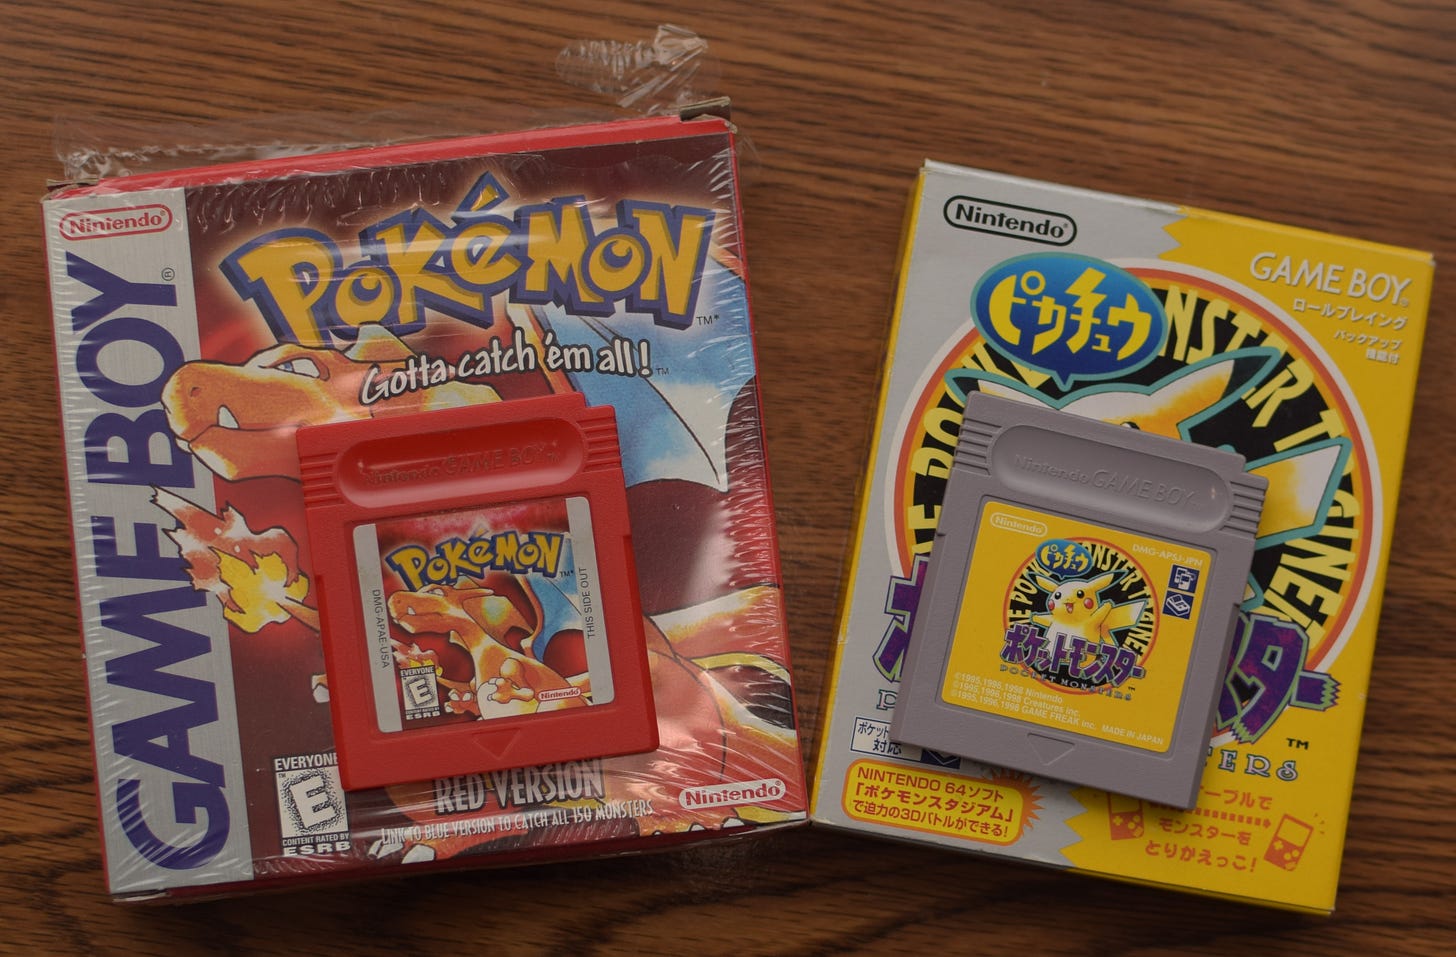 Chris's original English copy of Pokémon Red, and Japanese Pokémon Yellow